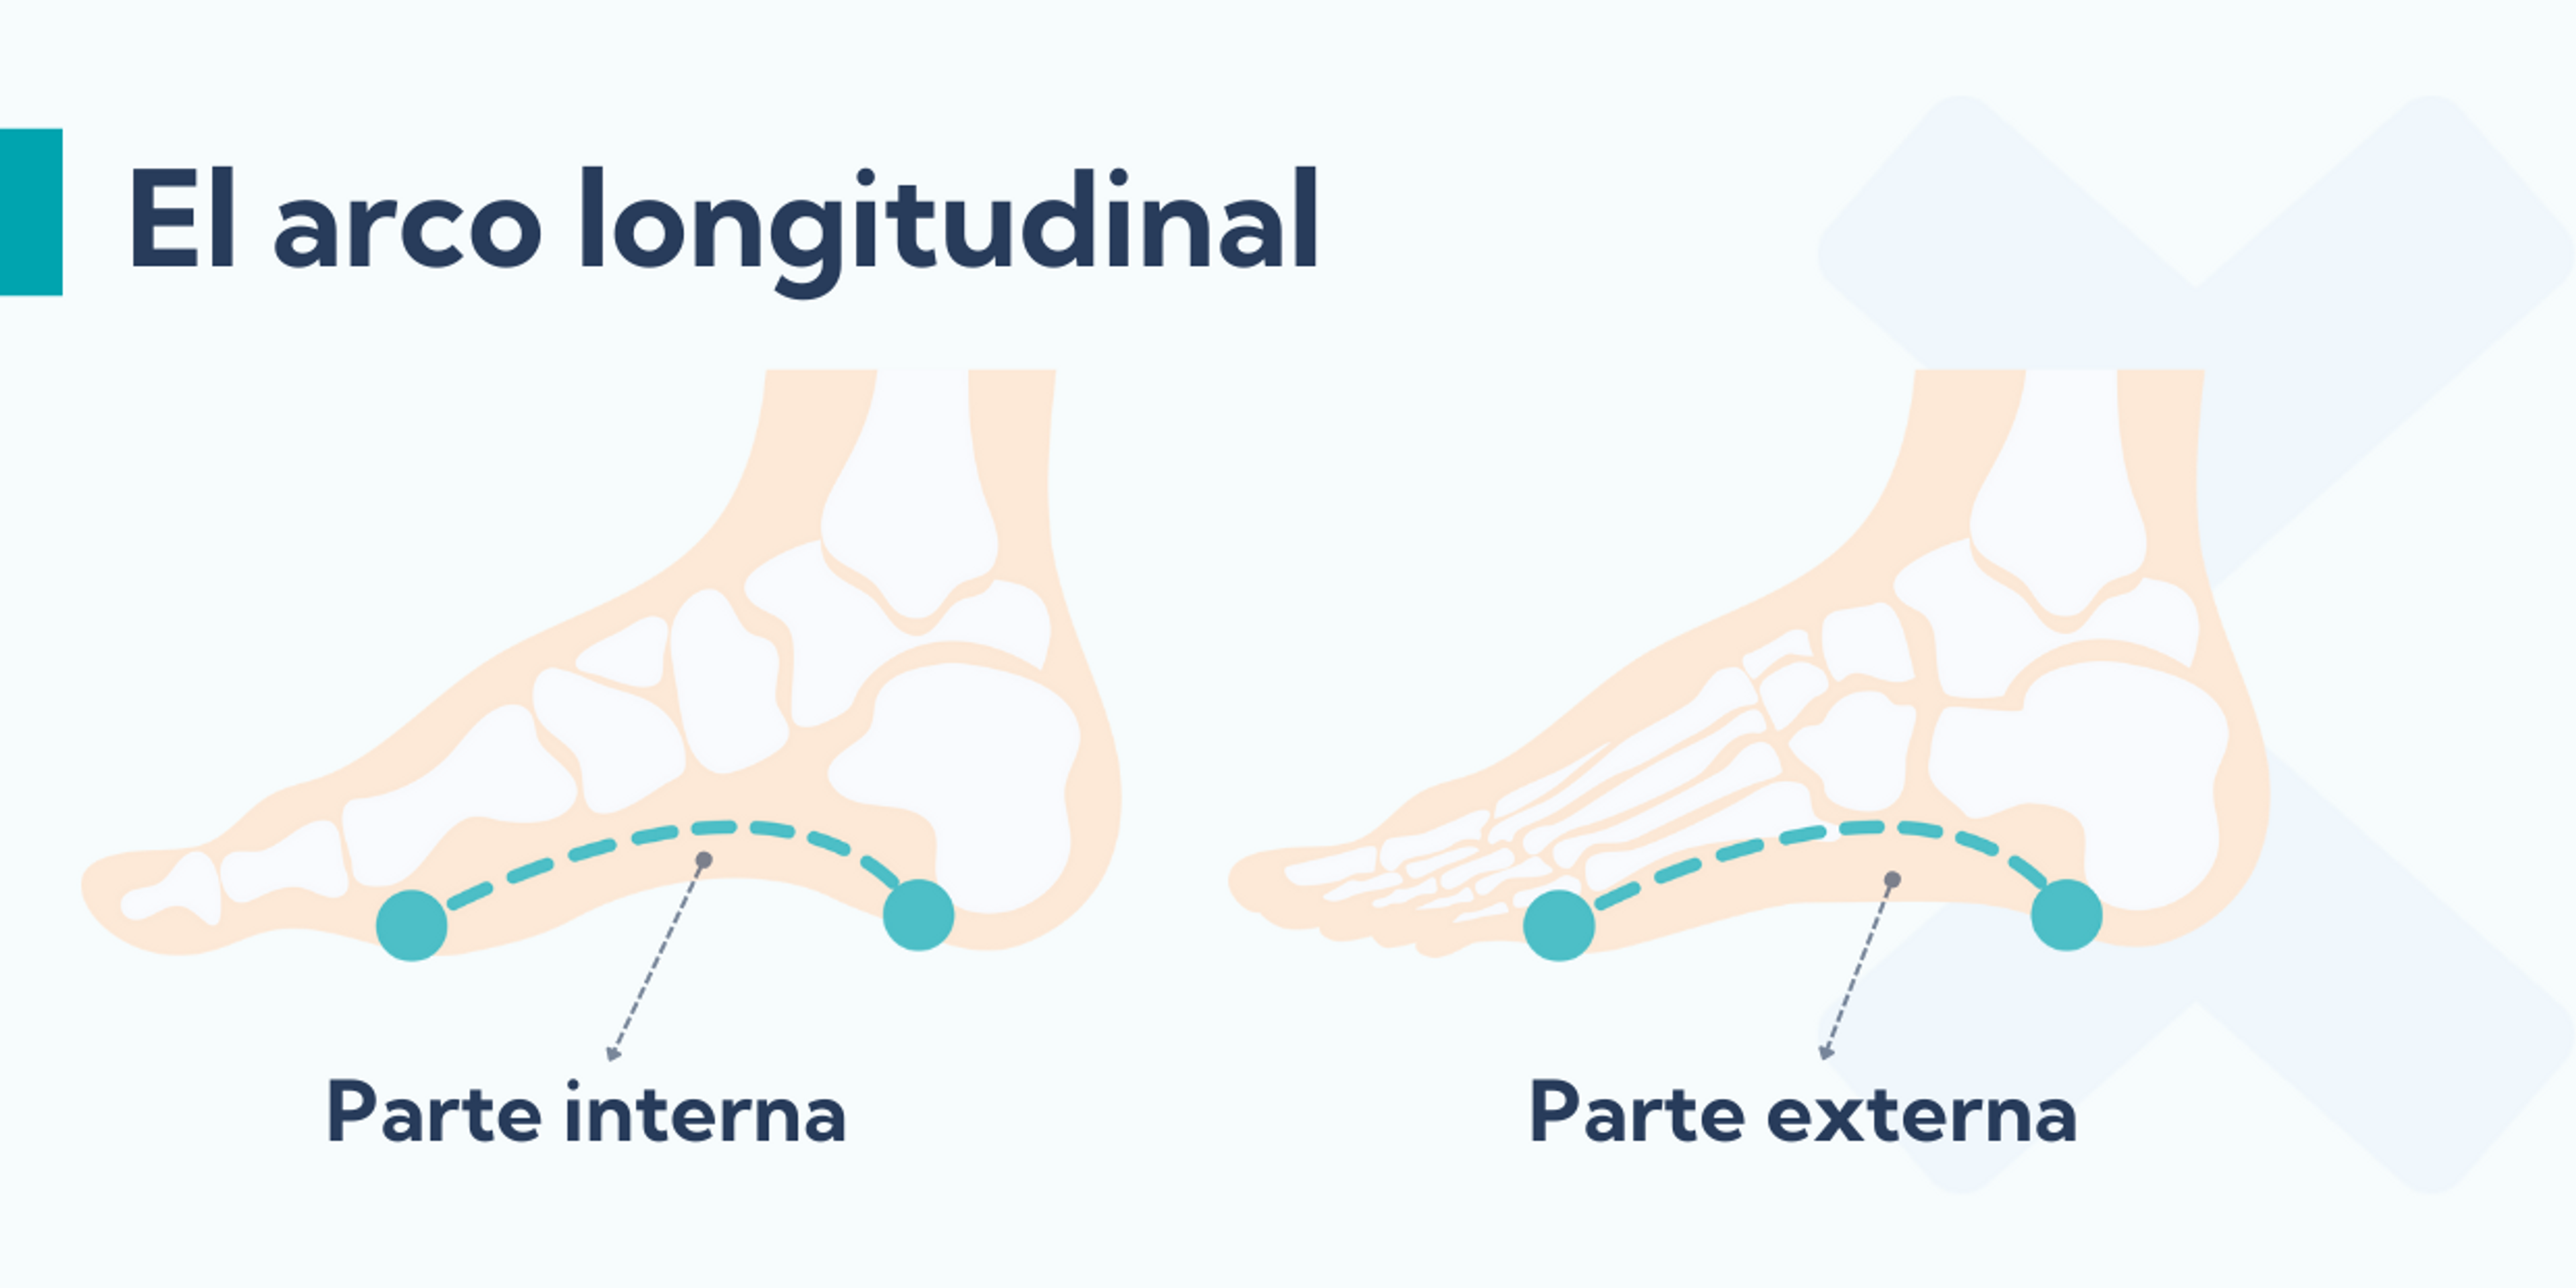 El arco lateral longitudinal atraviesa la parte externa del pie, mientras que al arco medial longitudinal atraviesa la parte internat